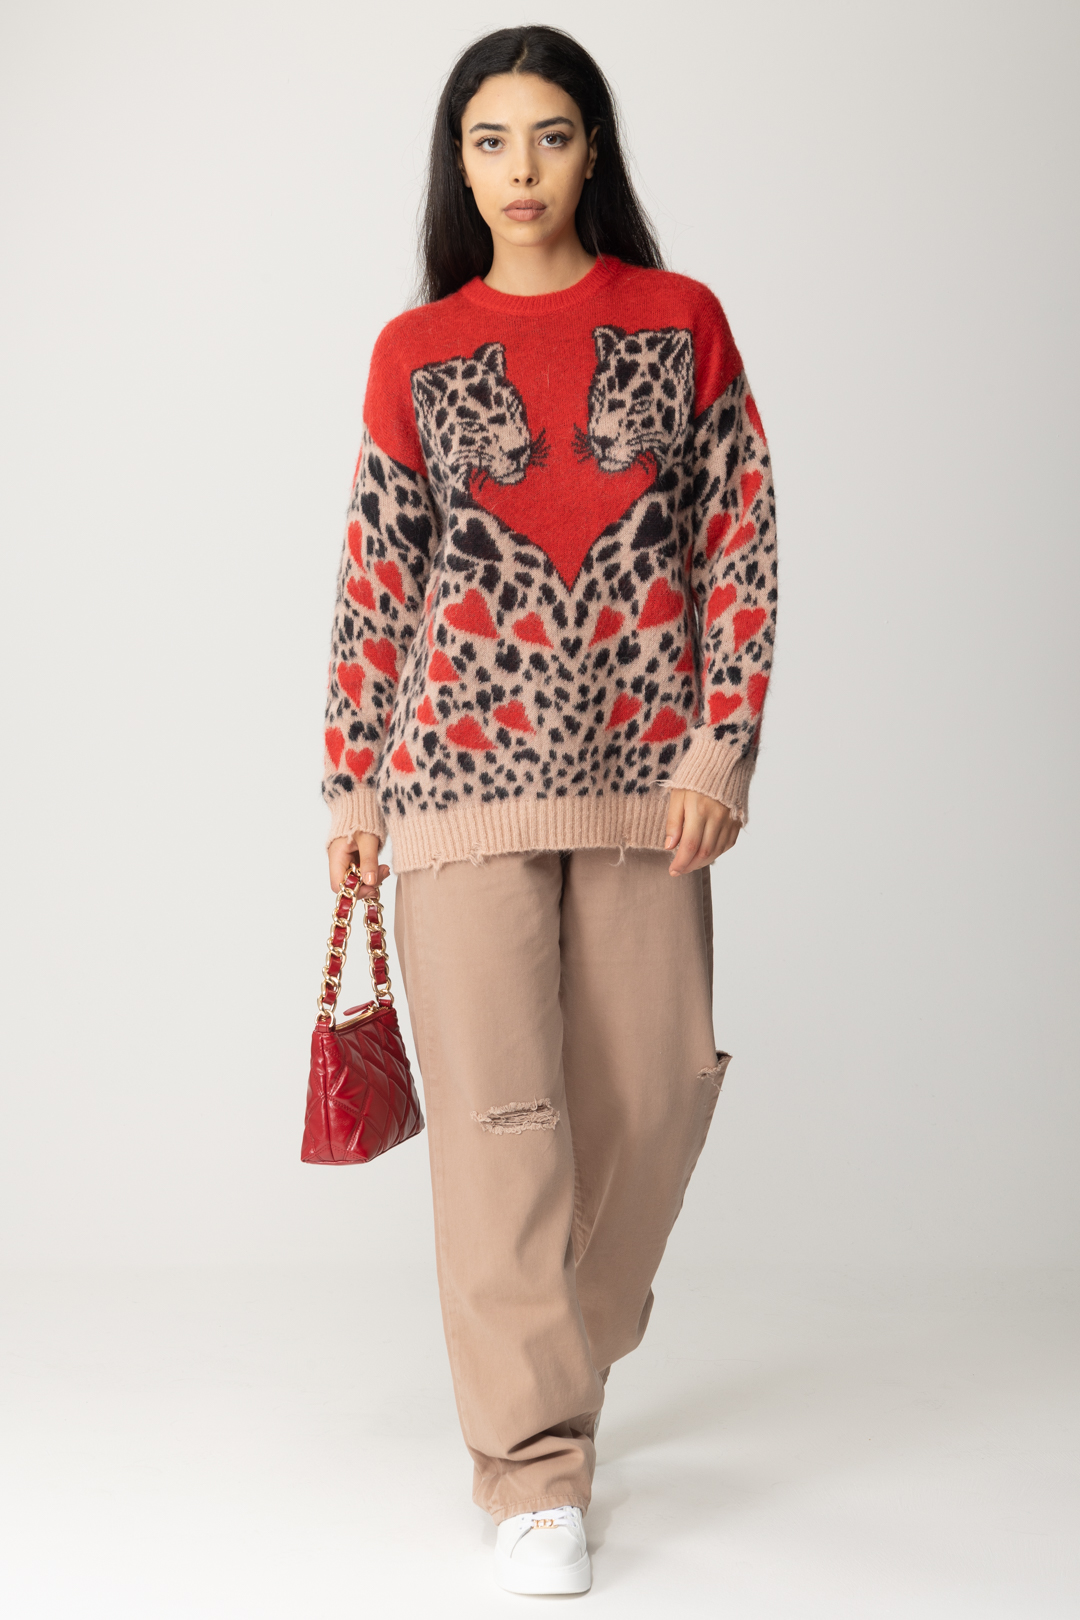 Vorschau: Aniye By Pullover mit Leopardenmuster RED LEO